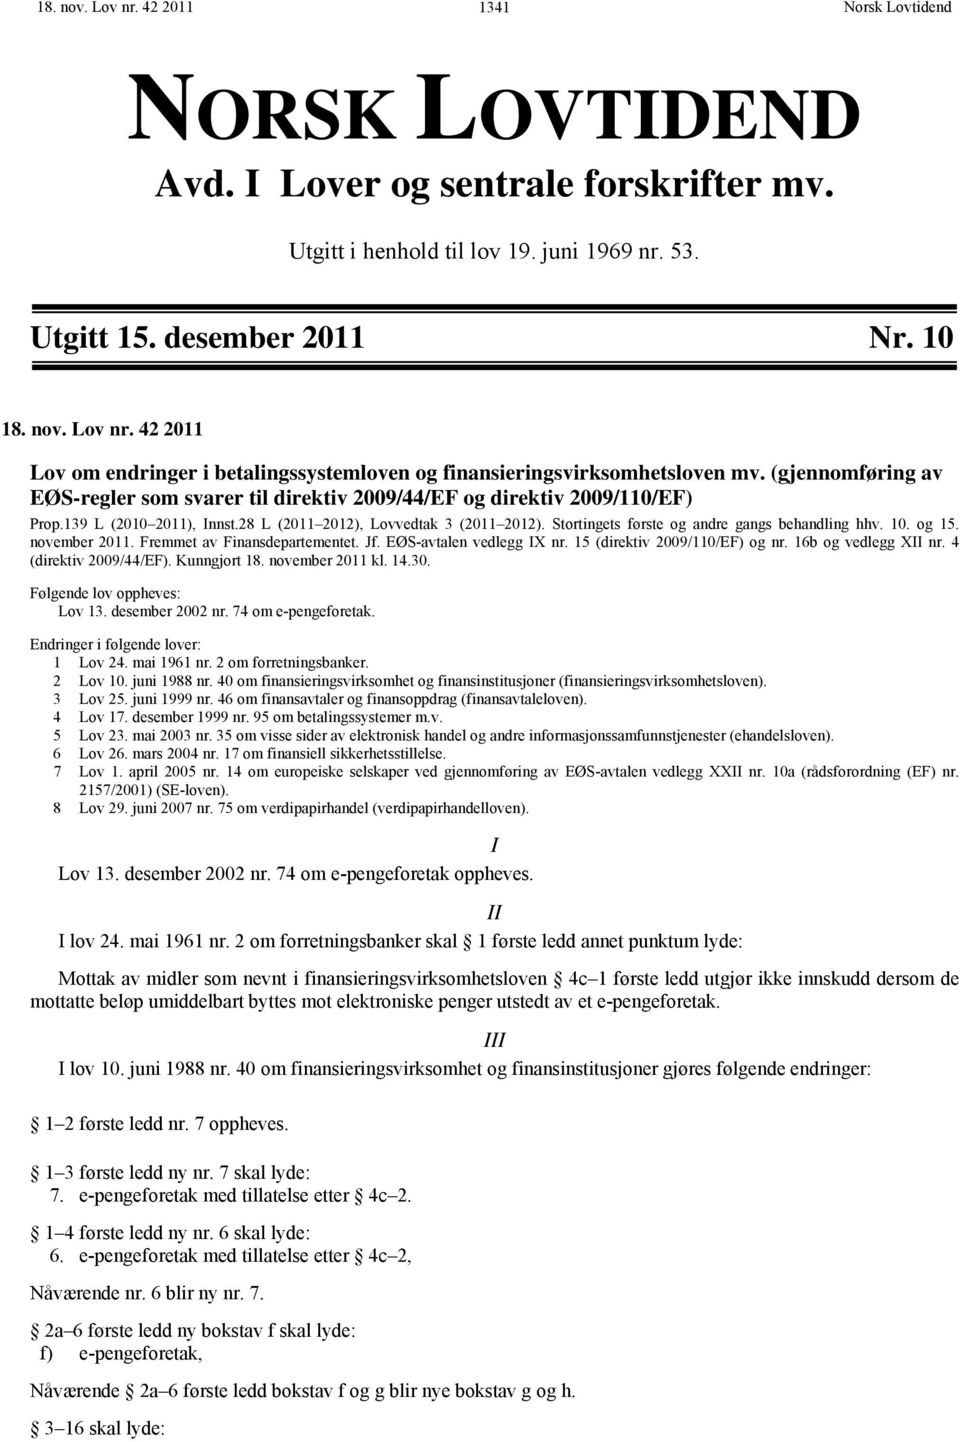 Stortingets første og andre gangs behandling hhv. 10. og 15. november 2011. Fremmet av Finansdepartementet. Jf. EØS-avtalen vedlegg IX nr. 15 (direktiv 2009/110/EF) og nr. 16b og vedlegg XII nr.